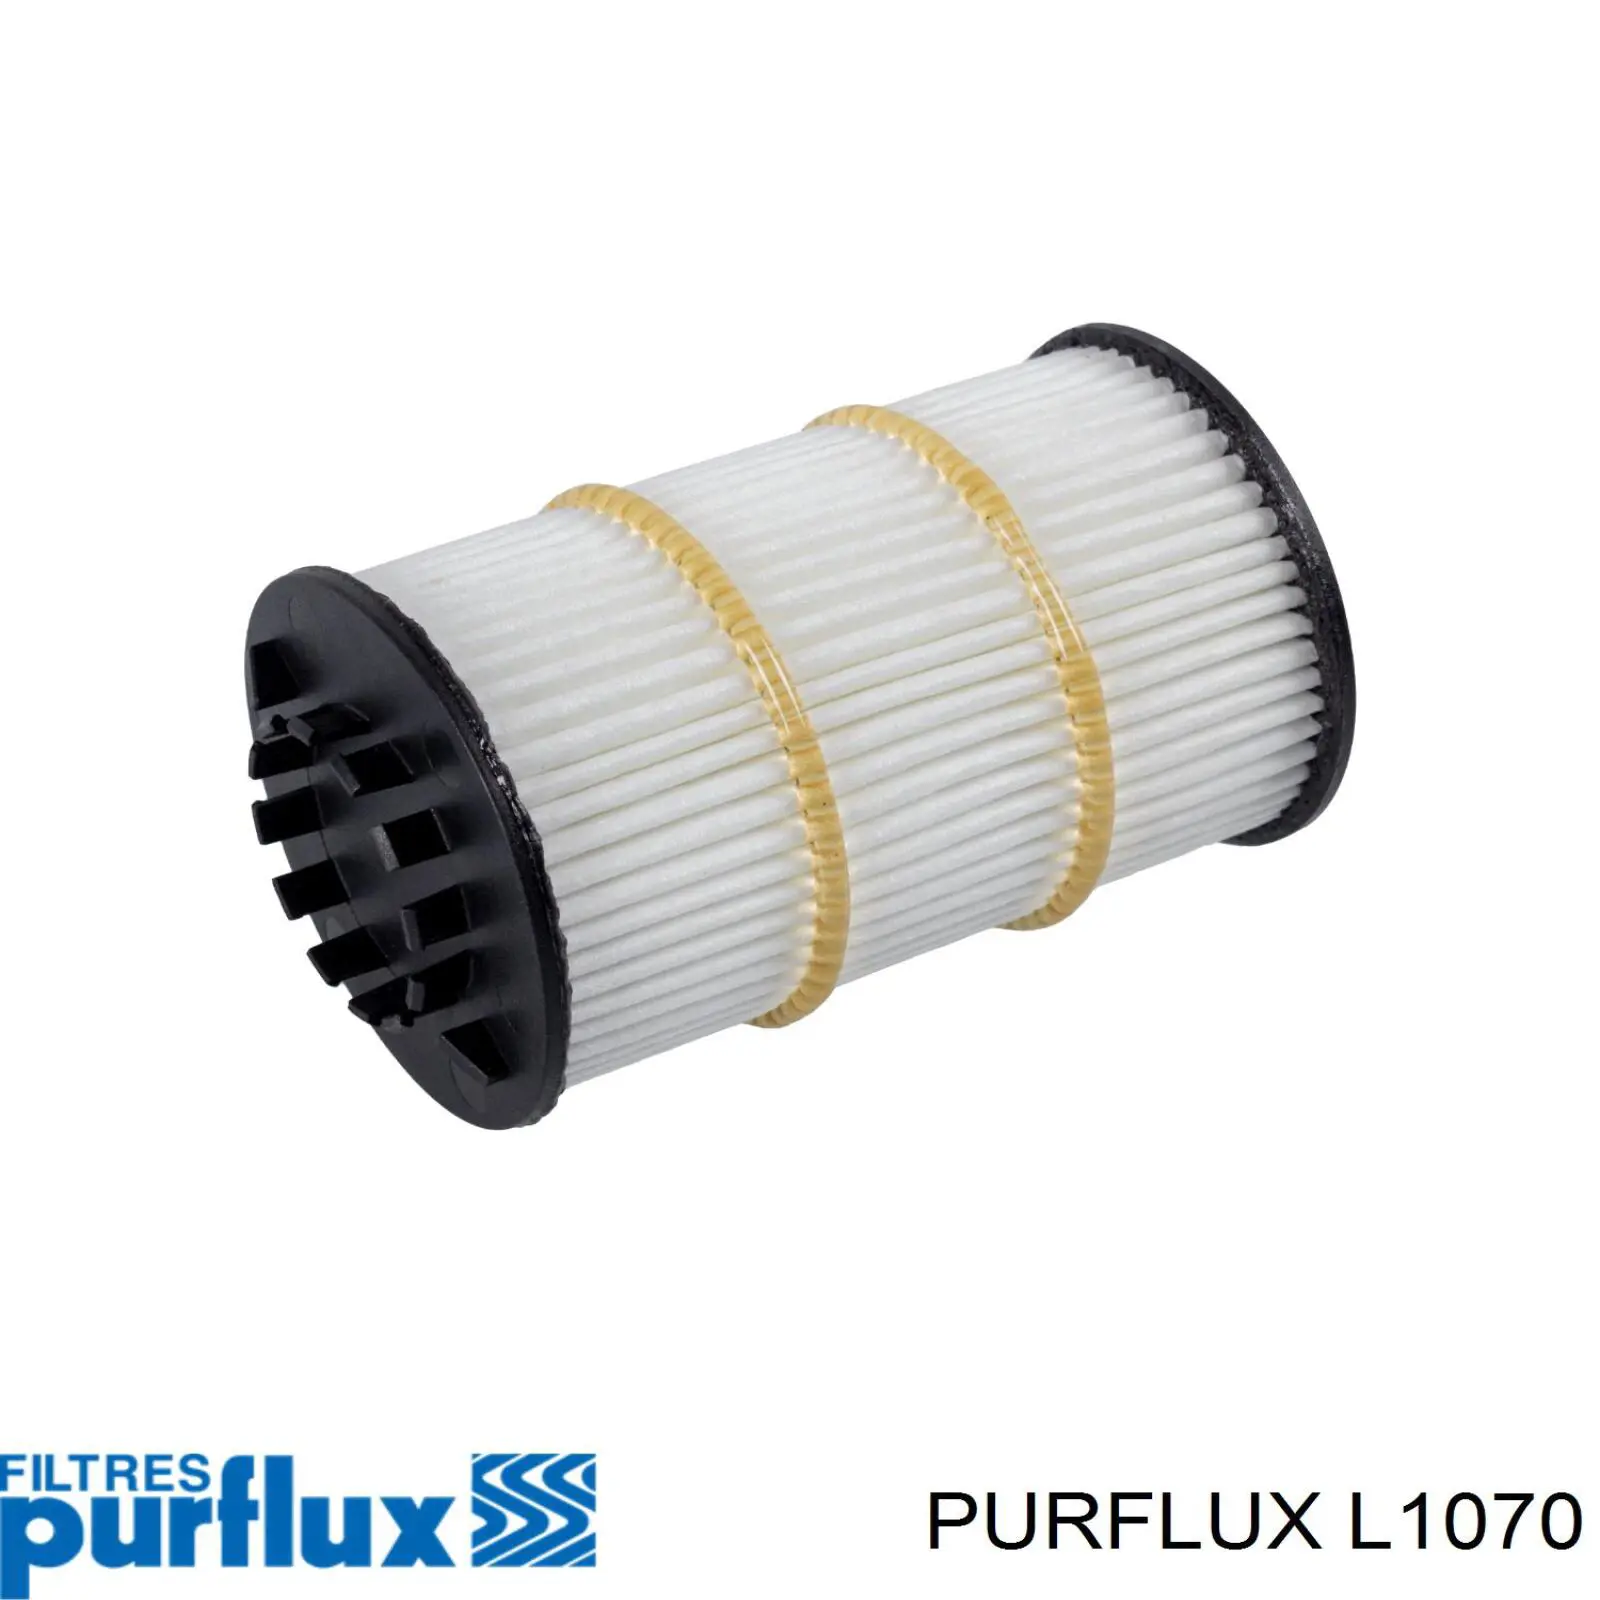 L1070 Purflux filtro de aceite